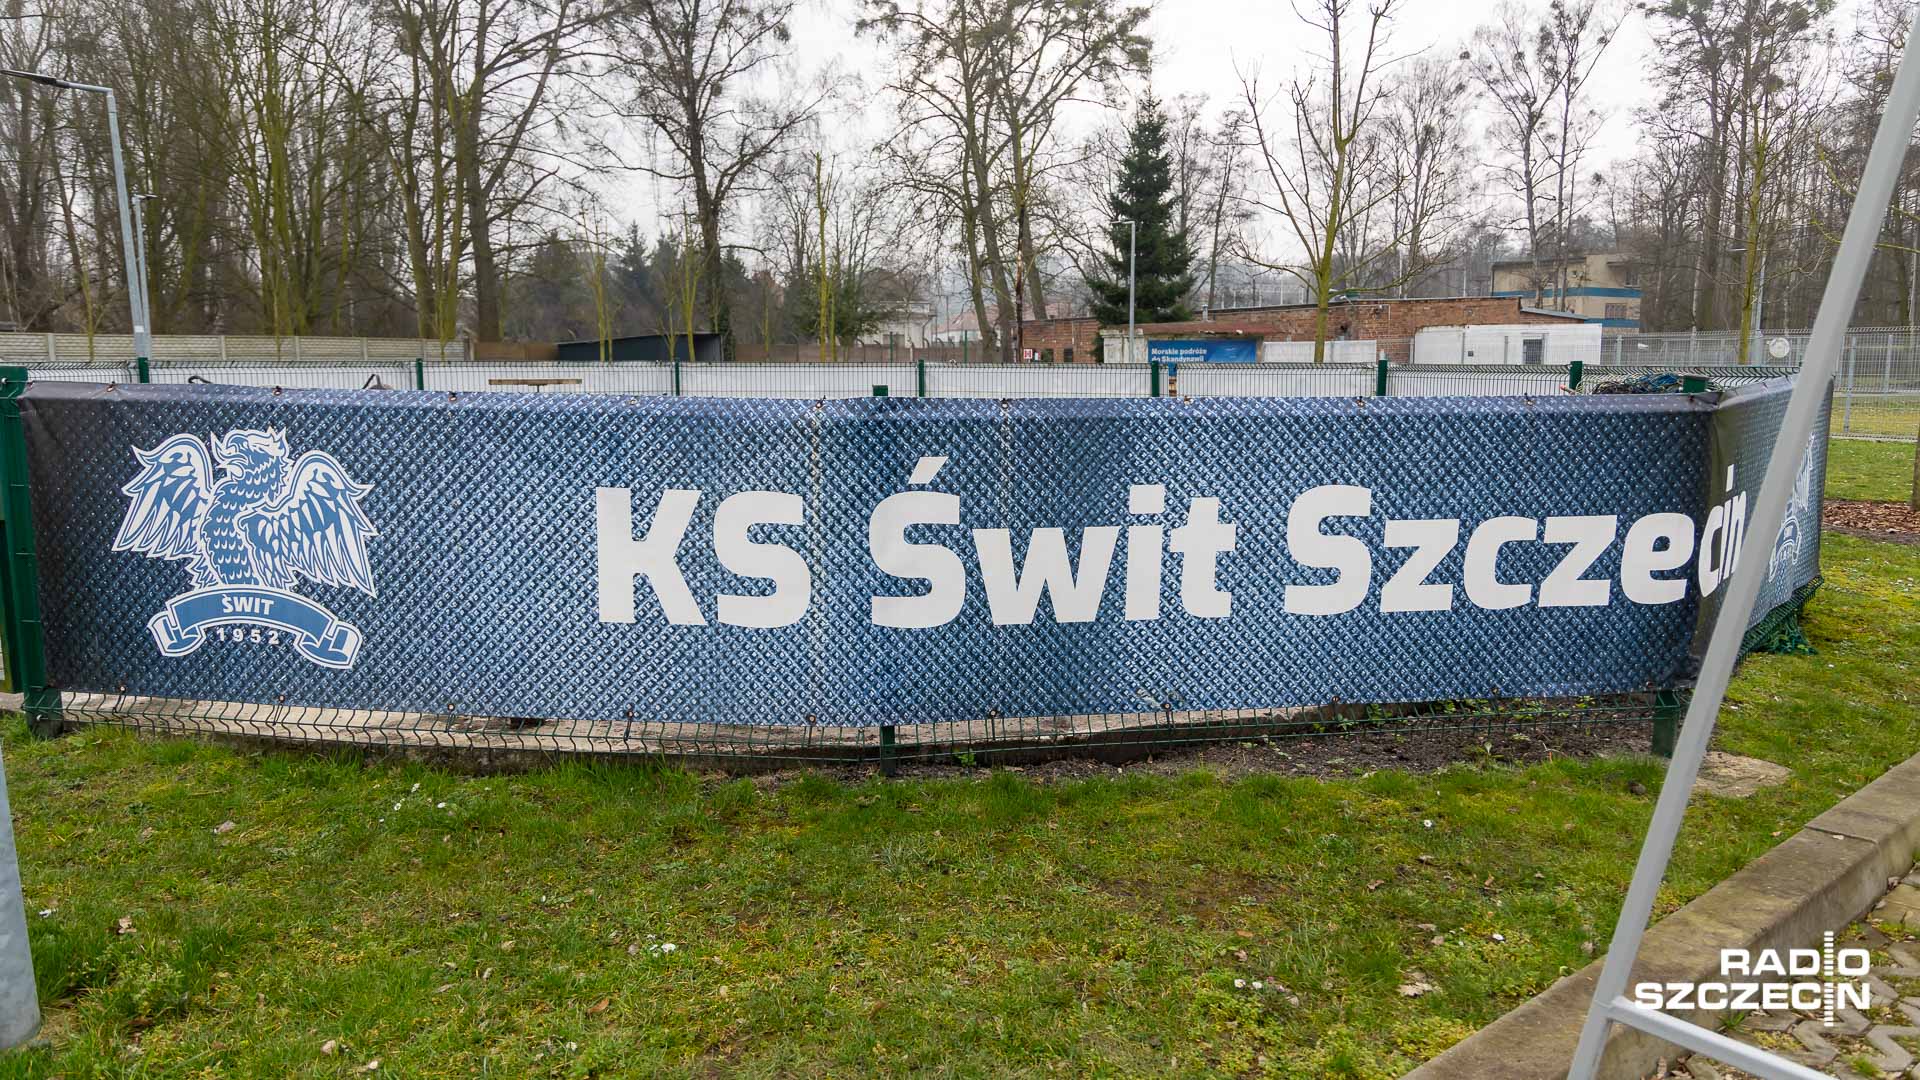 Prowadzący w tabeli grupy drugiej, piłkarze Świtu Szczecin zmierzą się dziś z Flotą Świnoujście w meczu inaugurującym 24. kolejki rozgrywek.